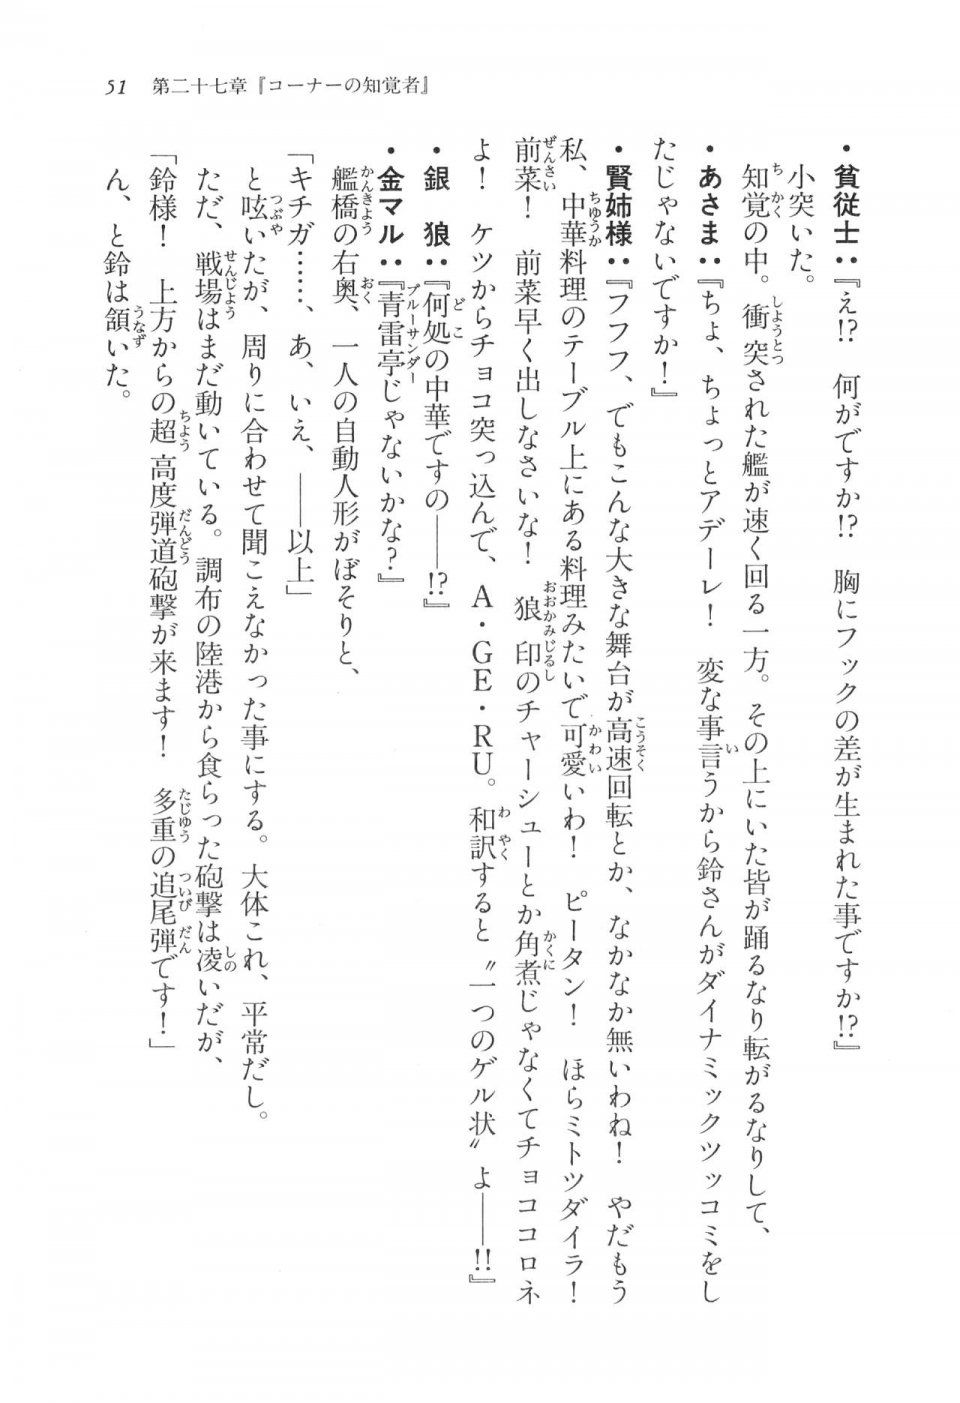 Kyoukai Senjou no Horizon LN Vol 17(7B) - Photo #51